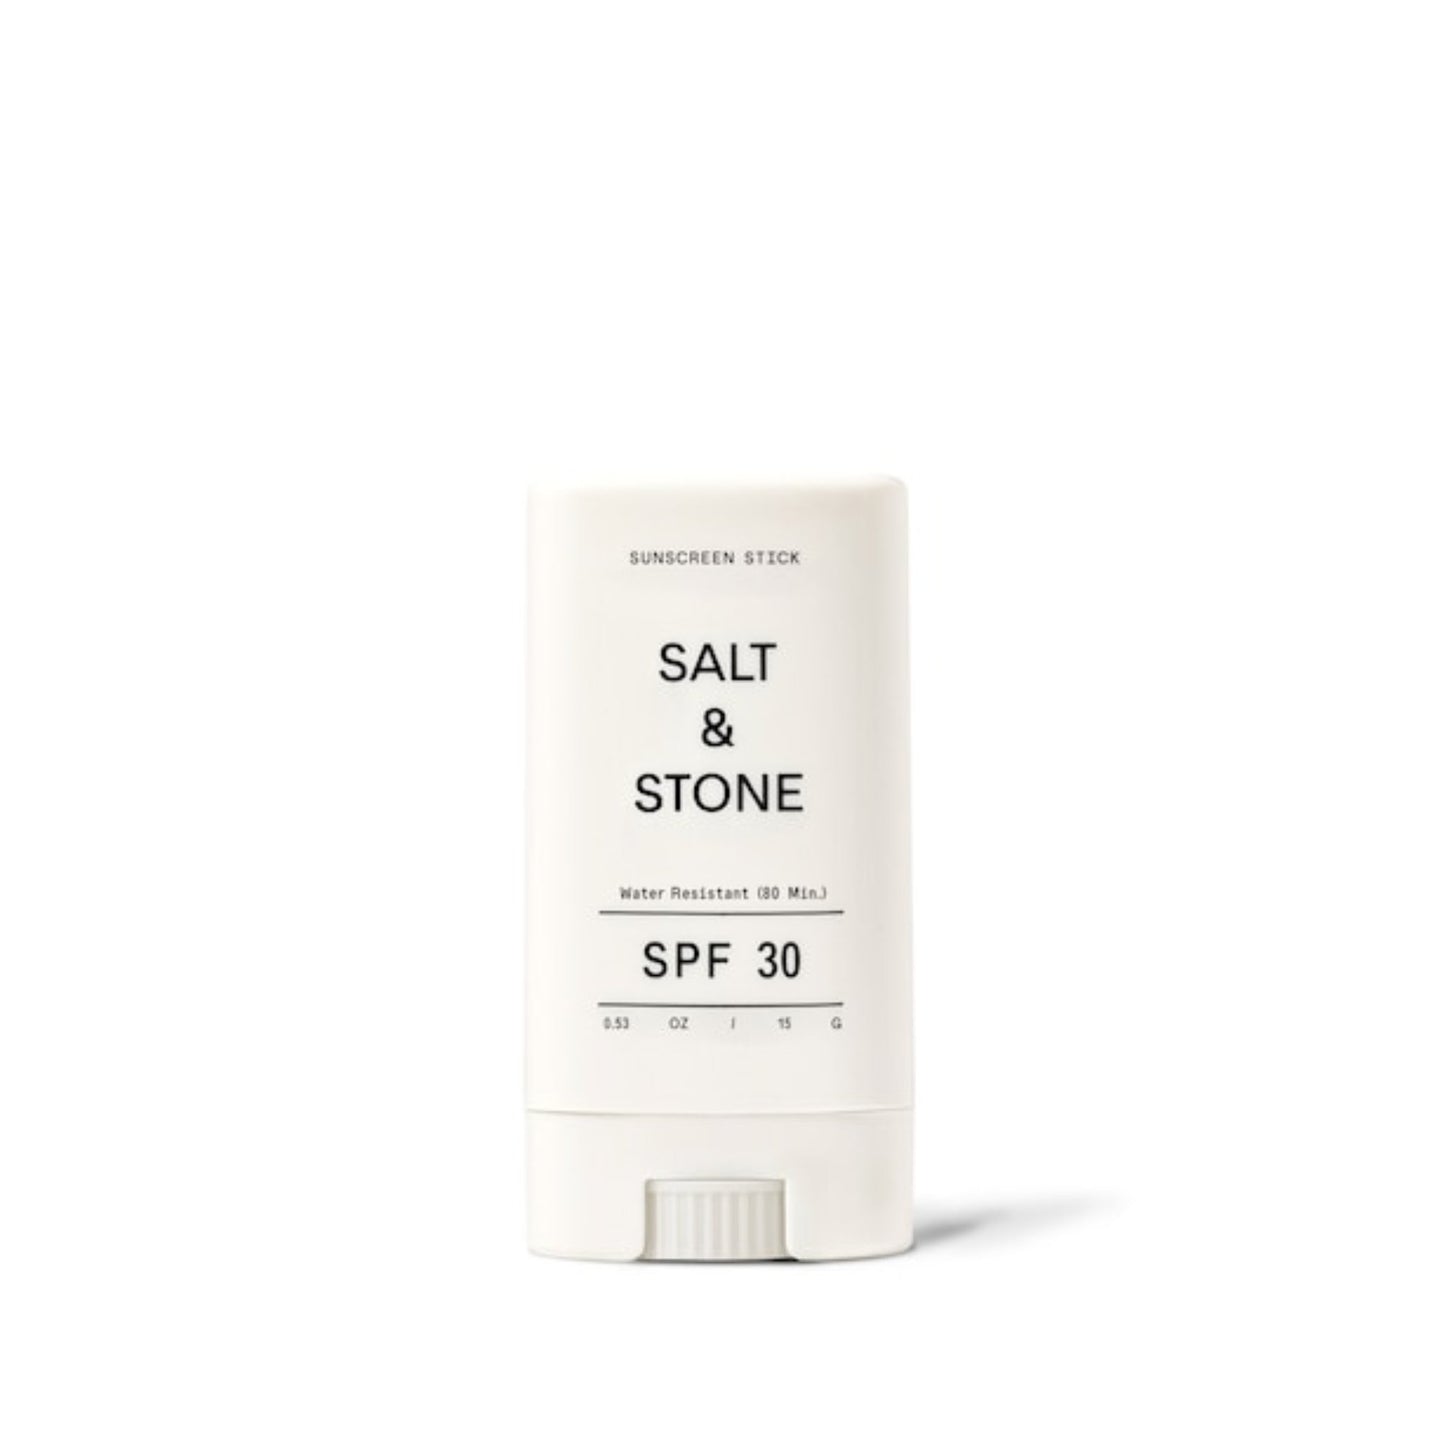 Salt & Stone - Salt & Stone Sunscreen Stick SPF30 - ORESTA clean beauty simplified